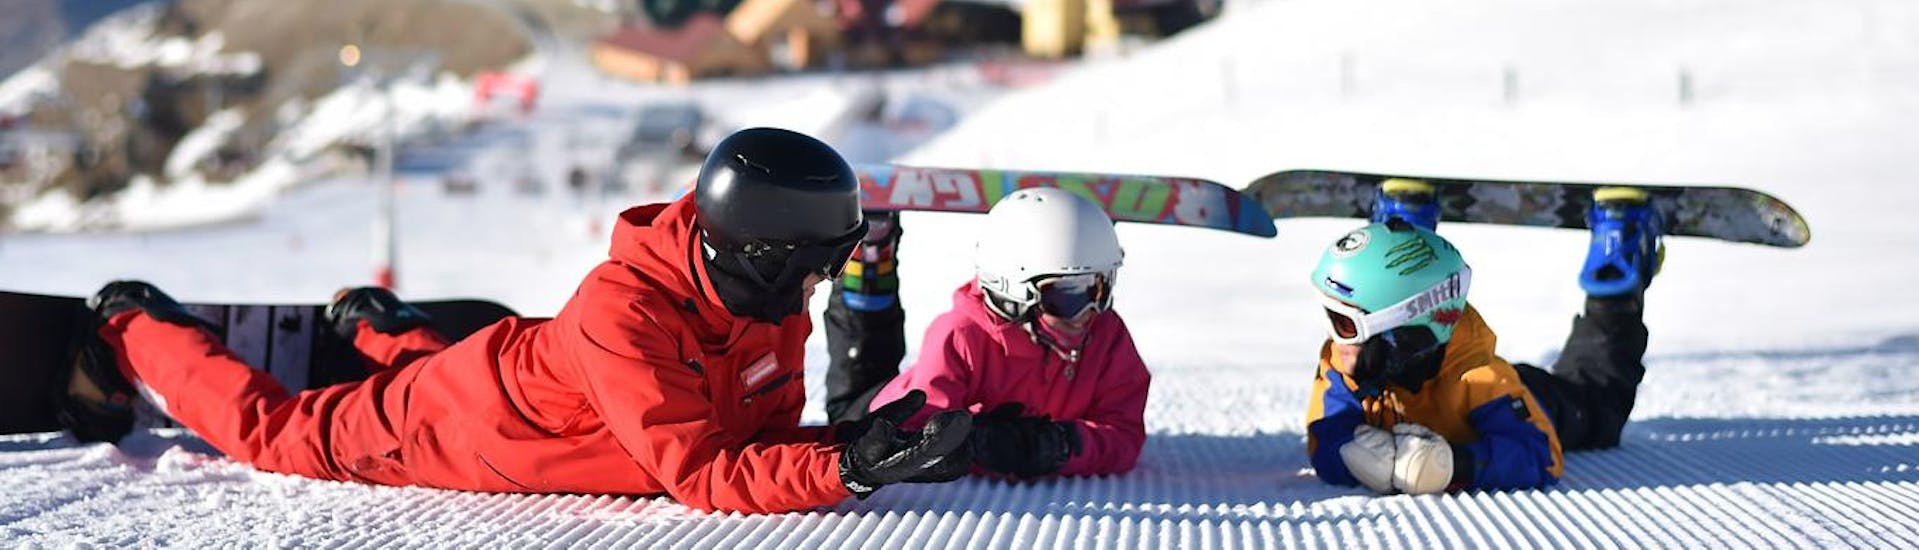 Lezioni di Snowboard a partire da 7 anni principianti assoluti.